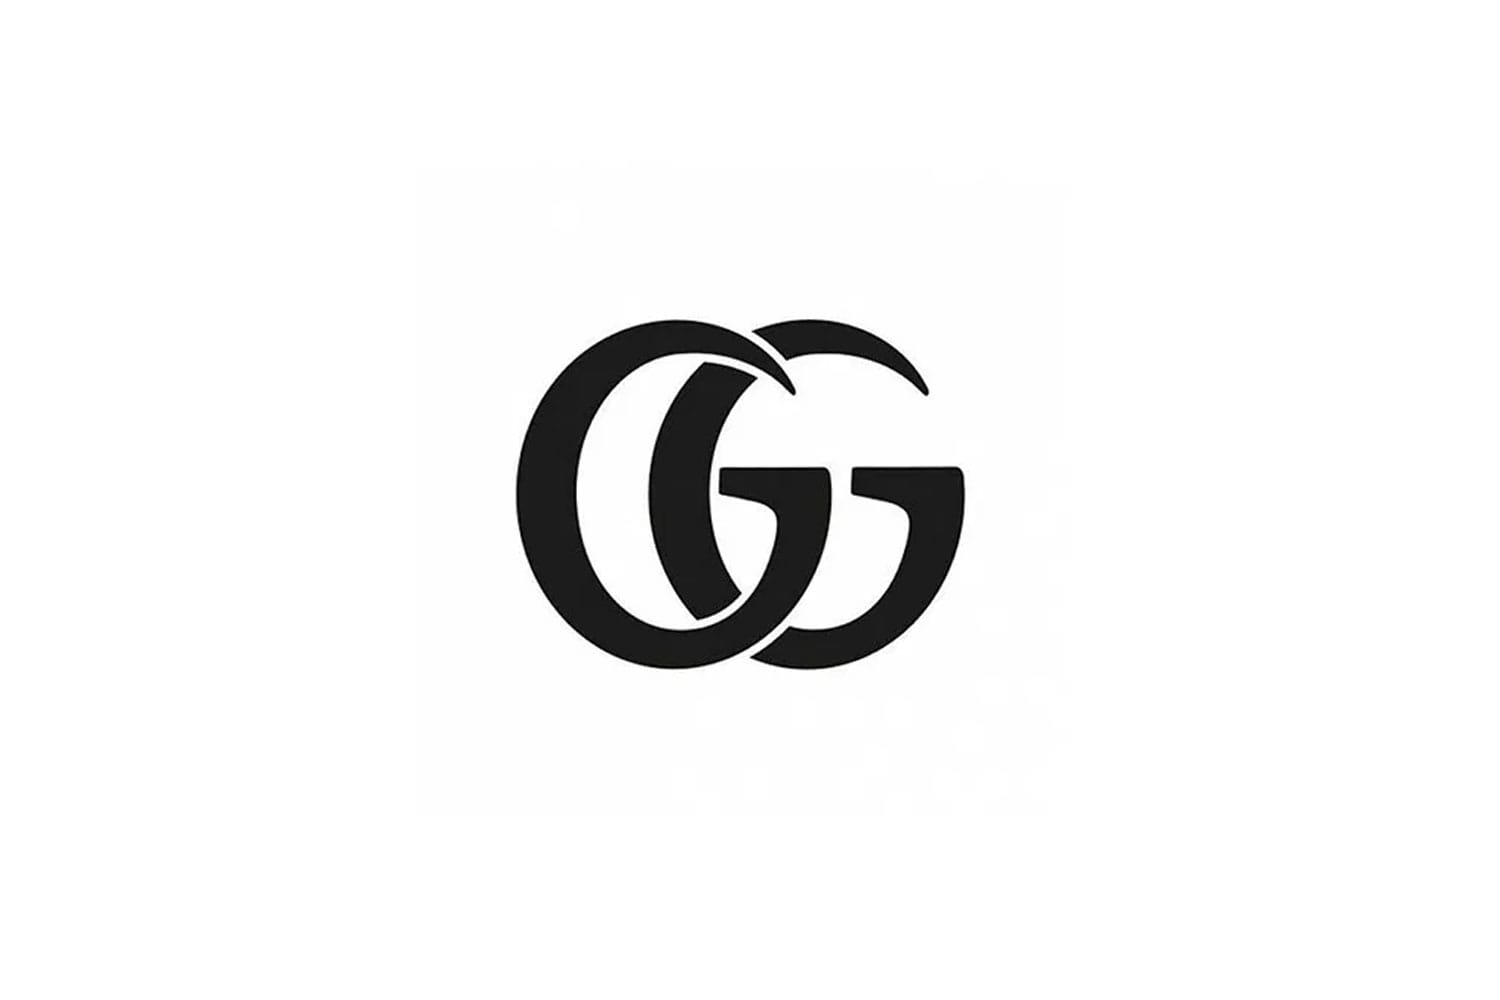 gucci logo brand